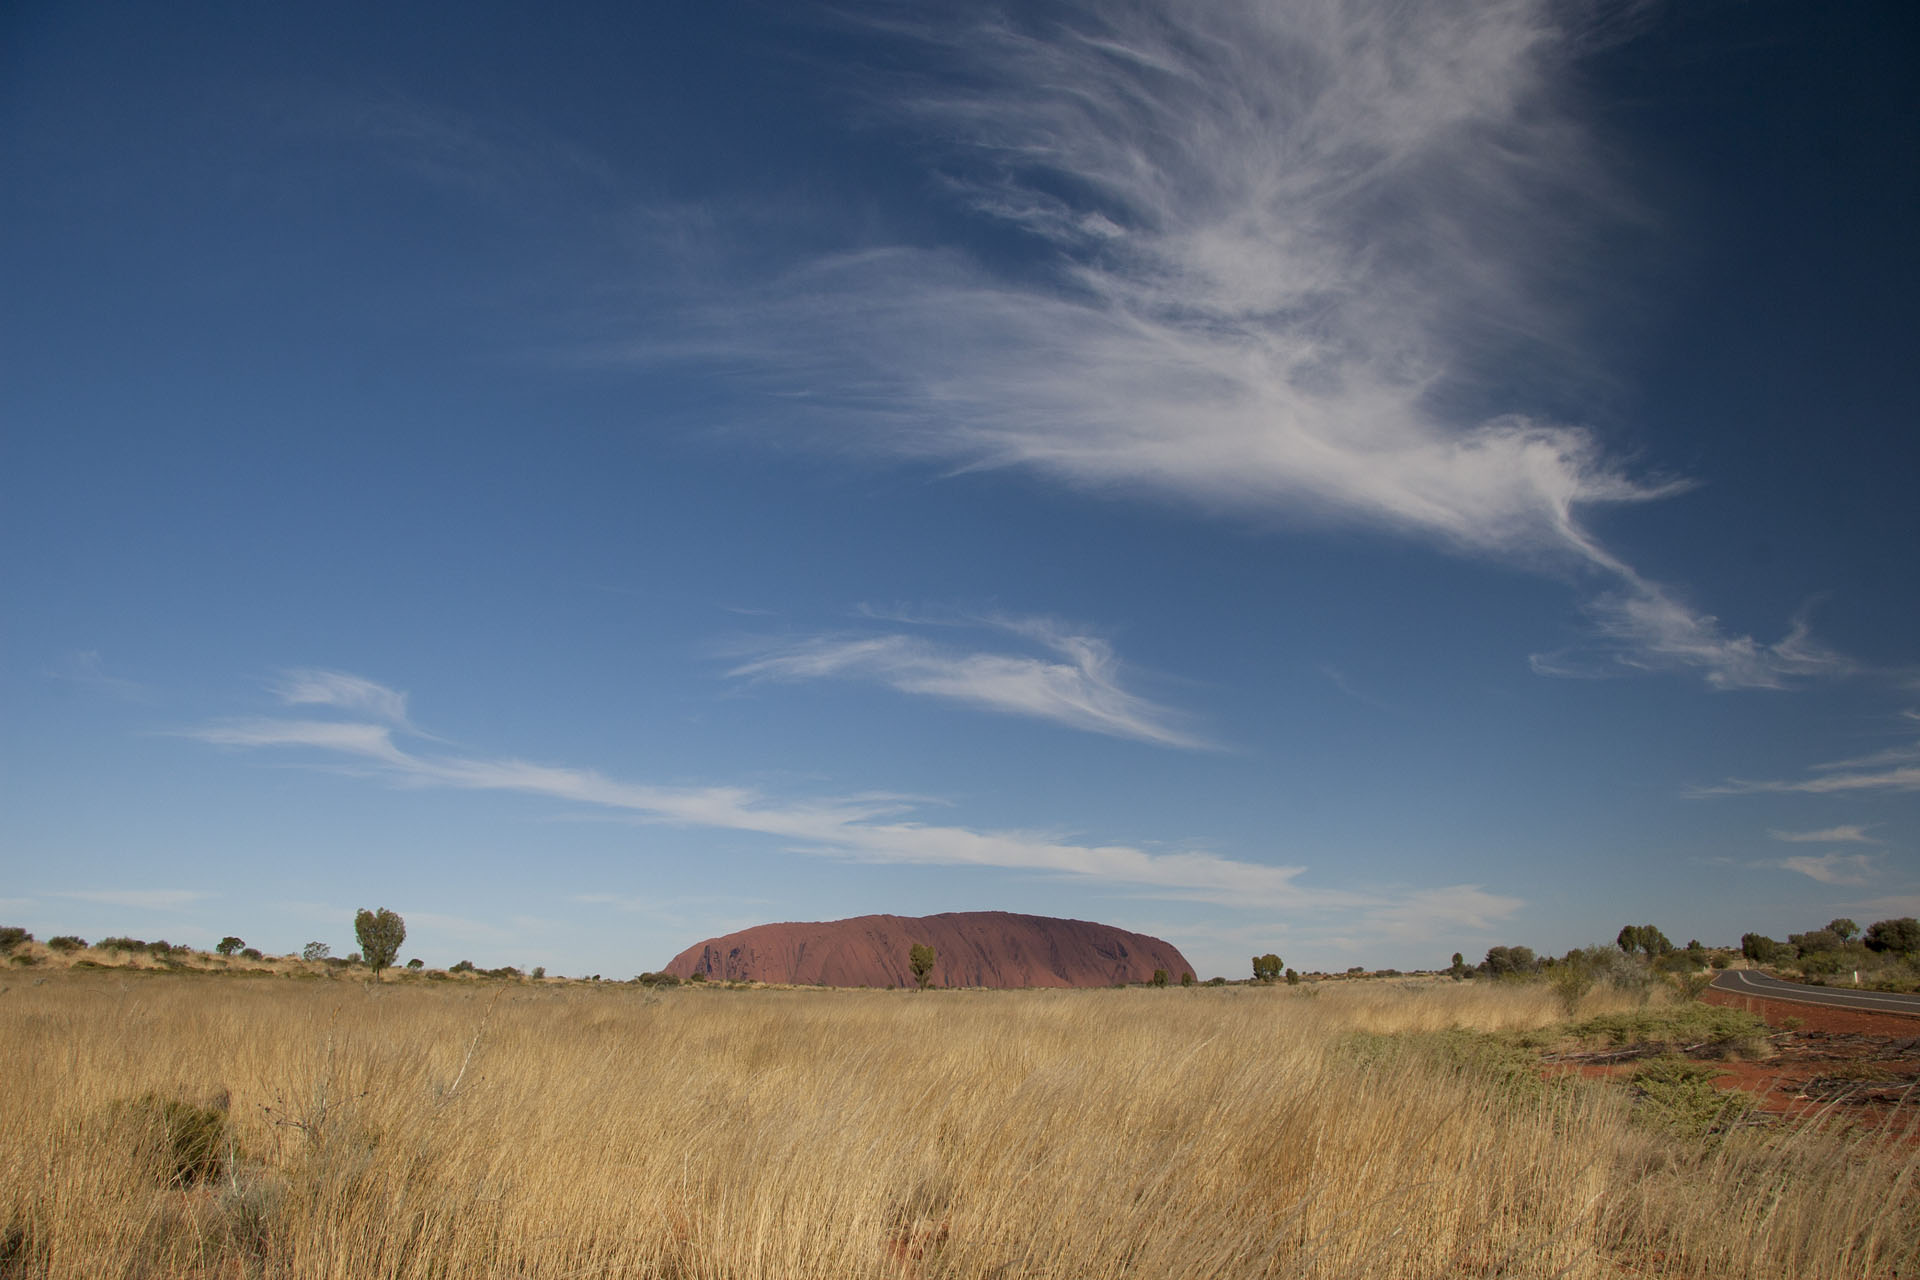 Uluru is getting closer.